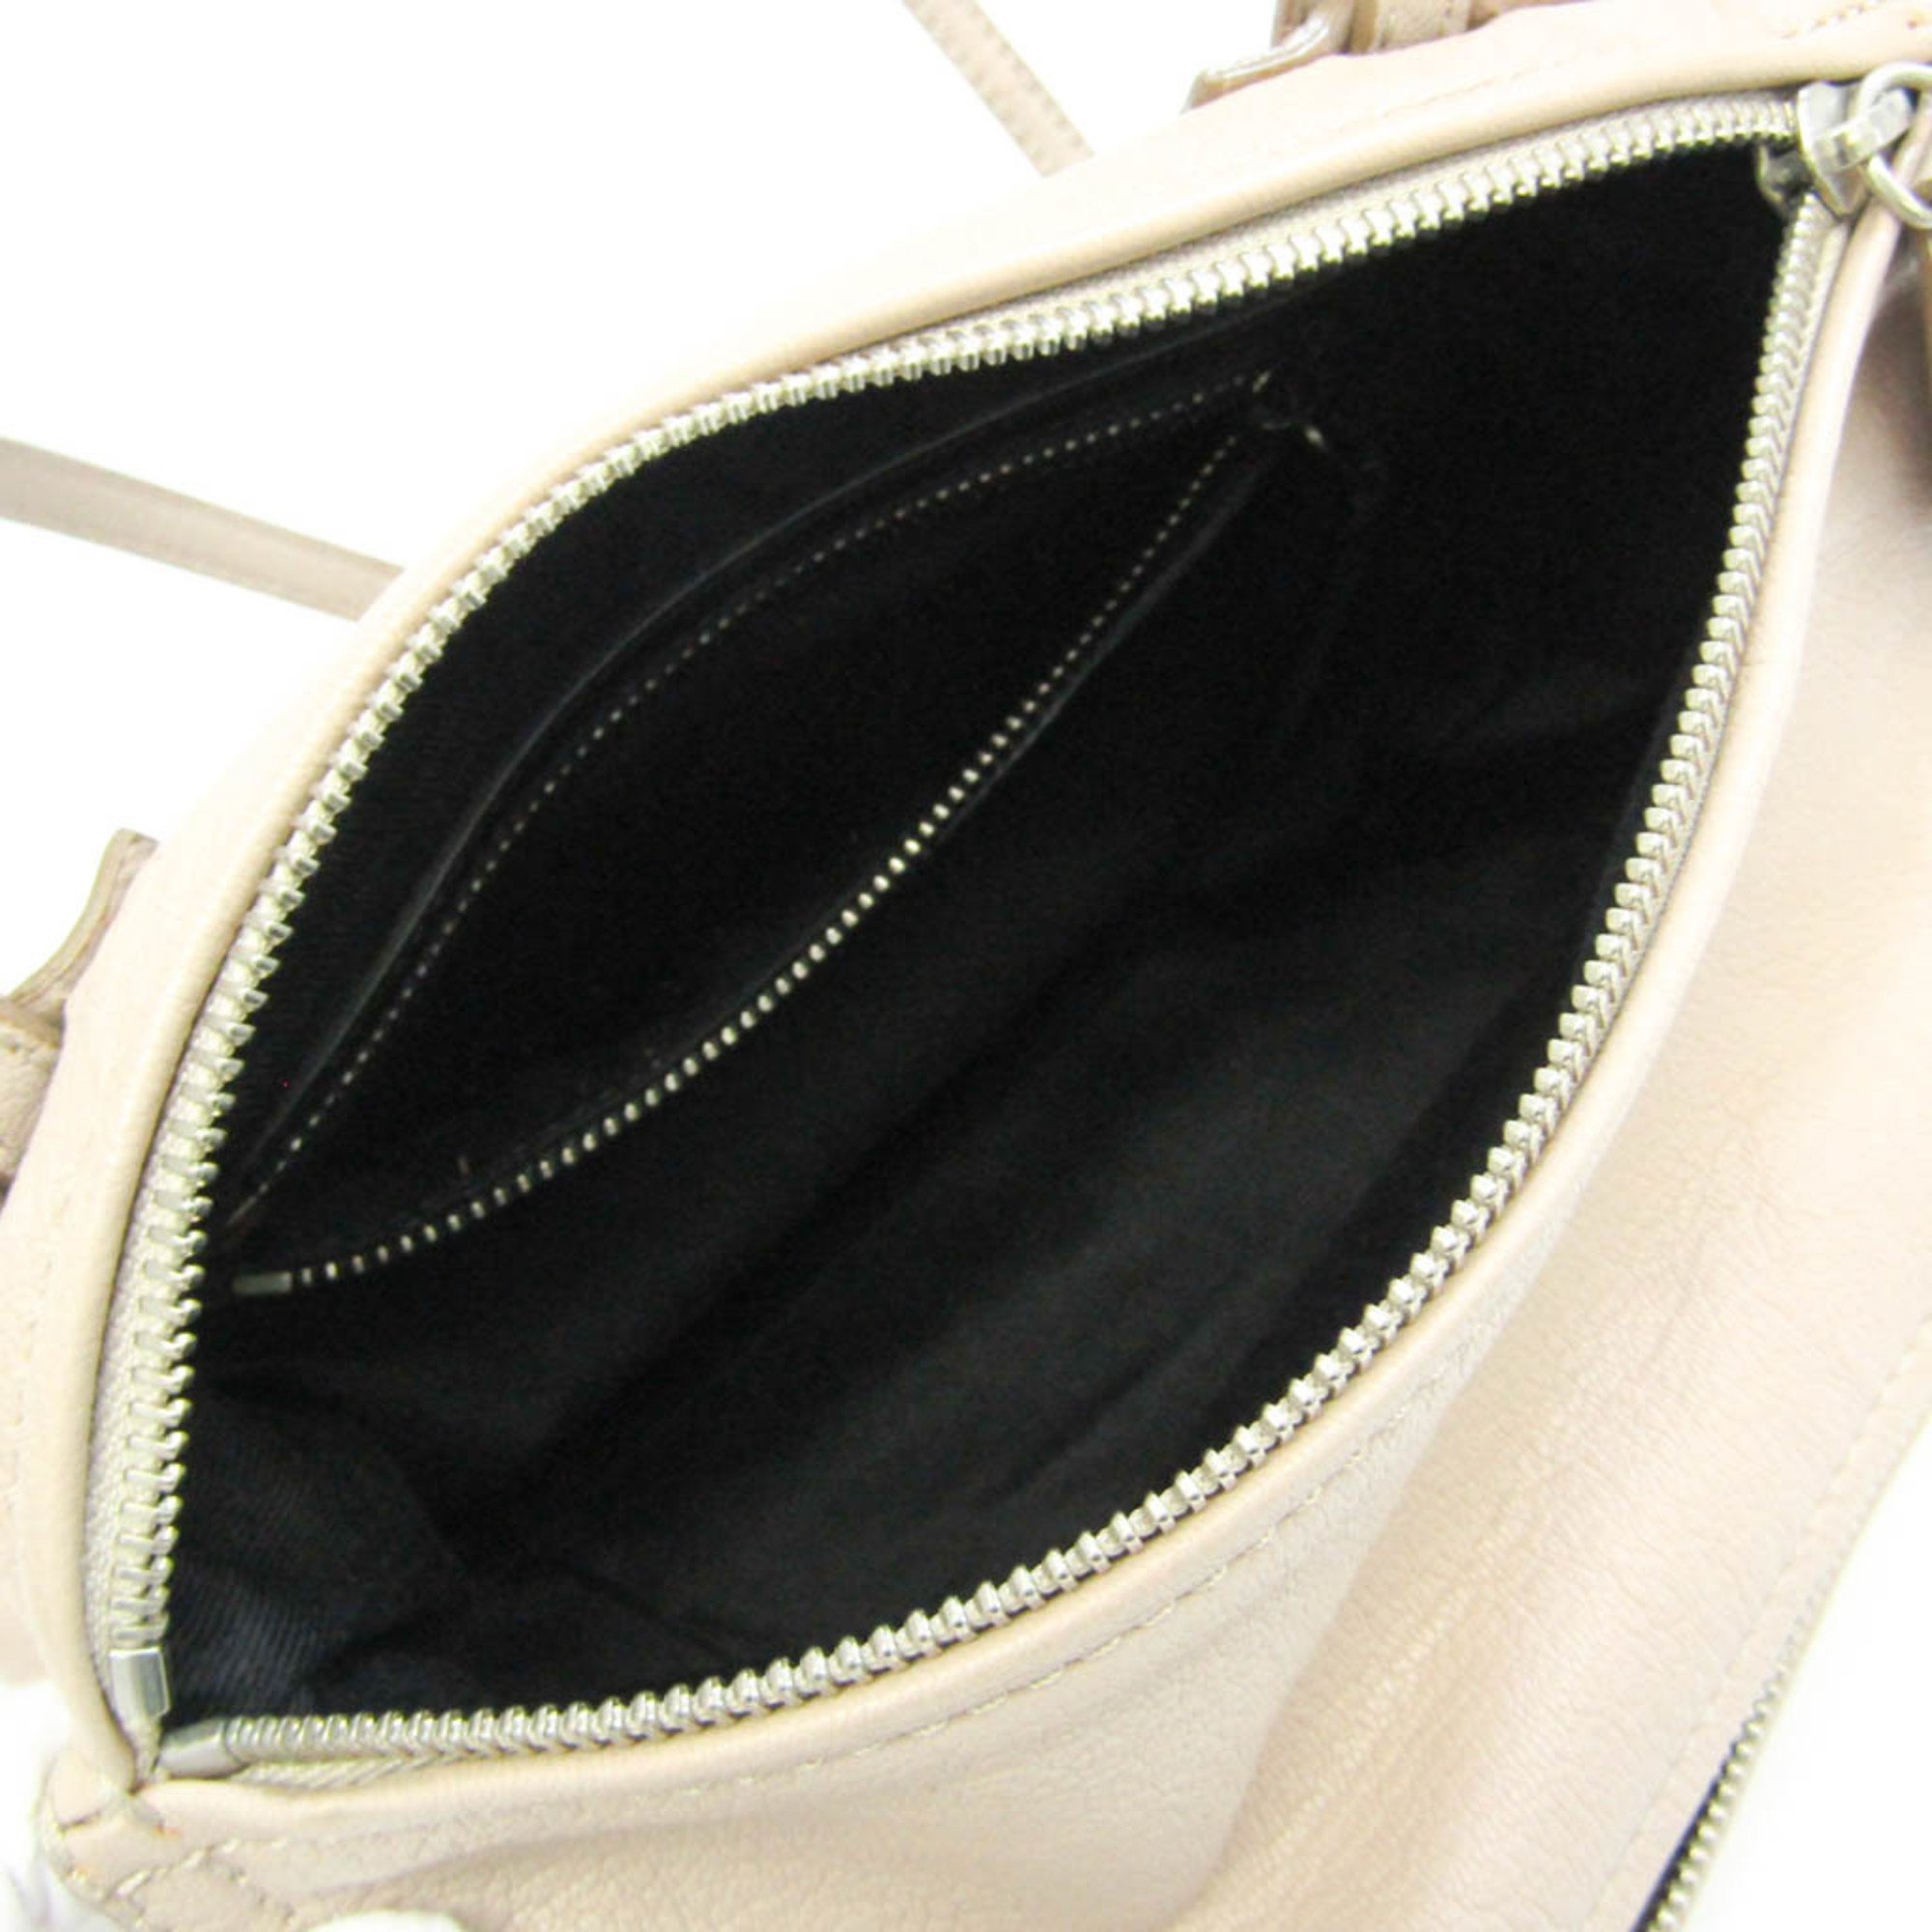 Givenchy Pandora Women's Leather Shoulder Bag Pink Beige